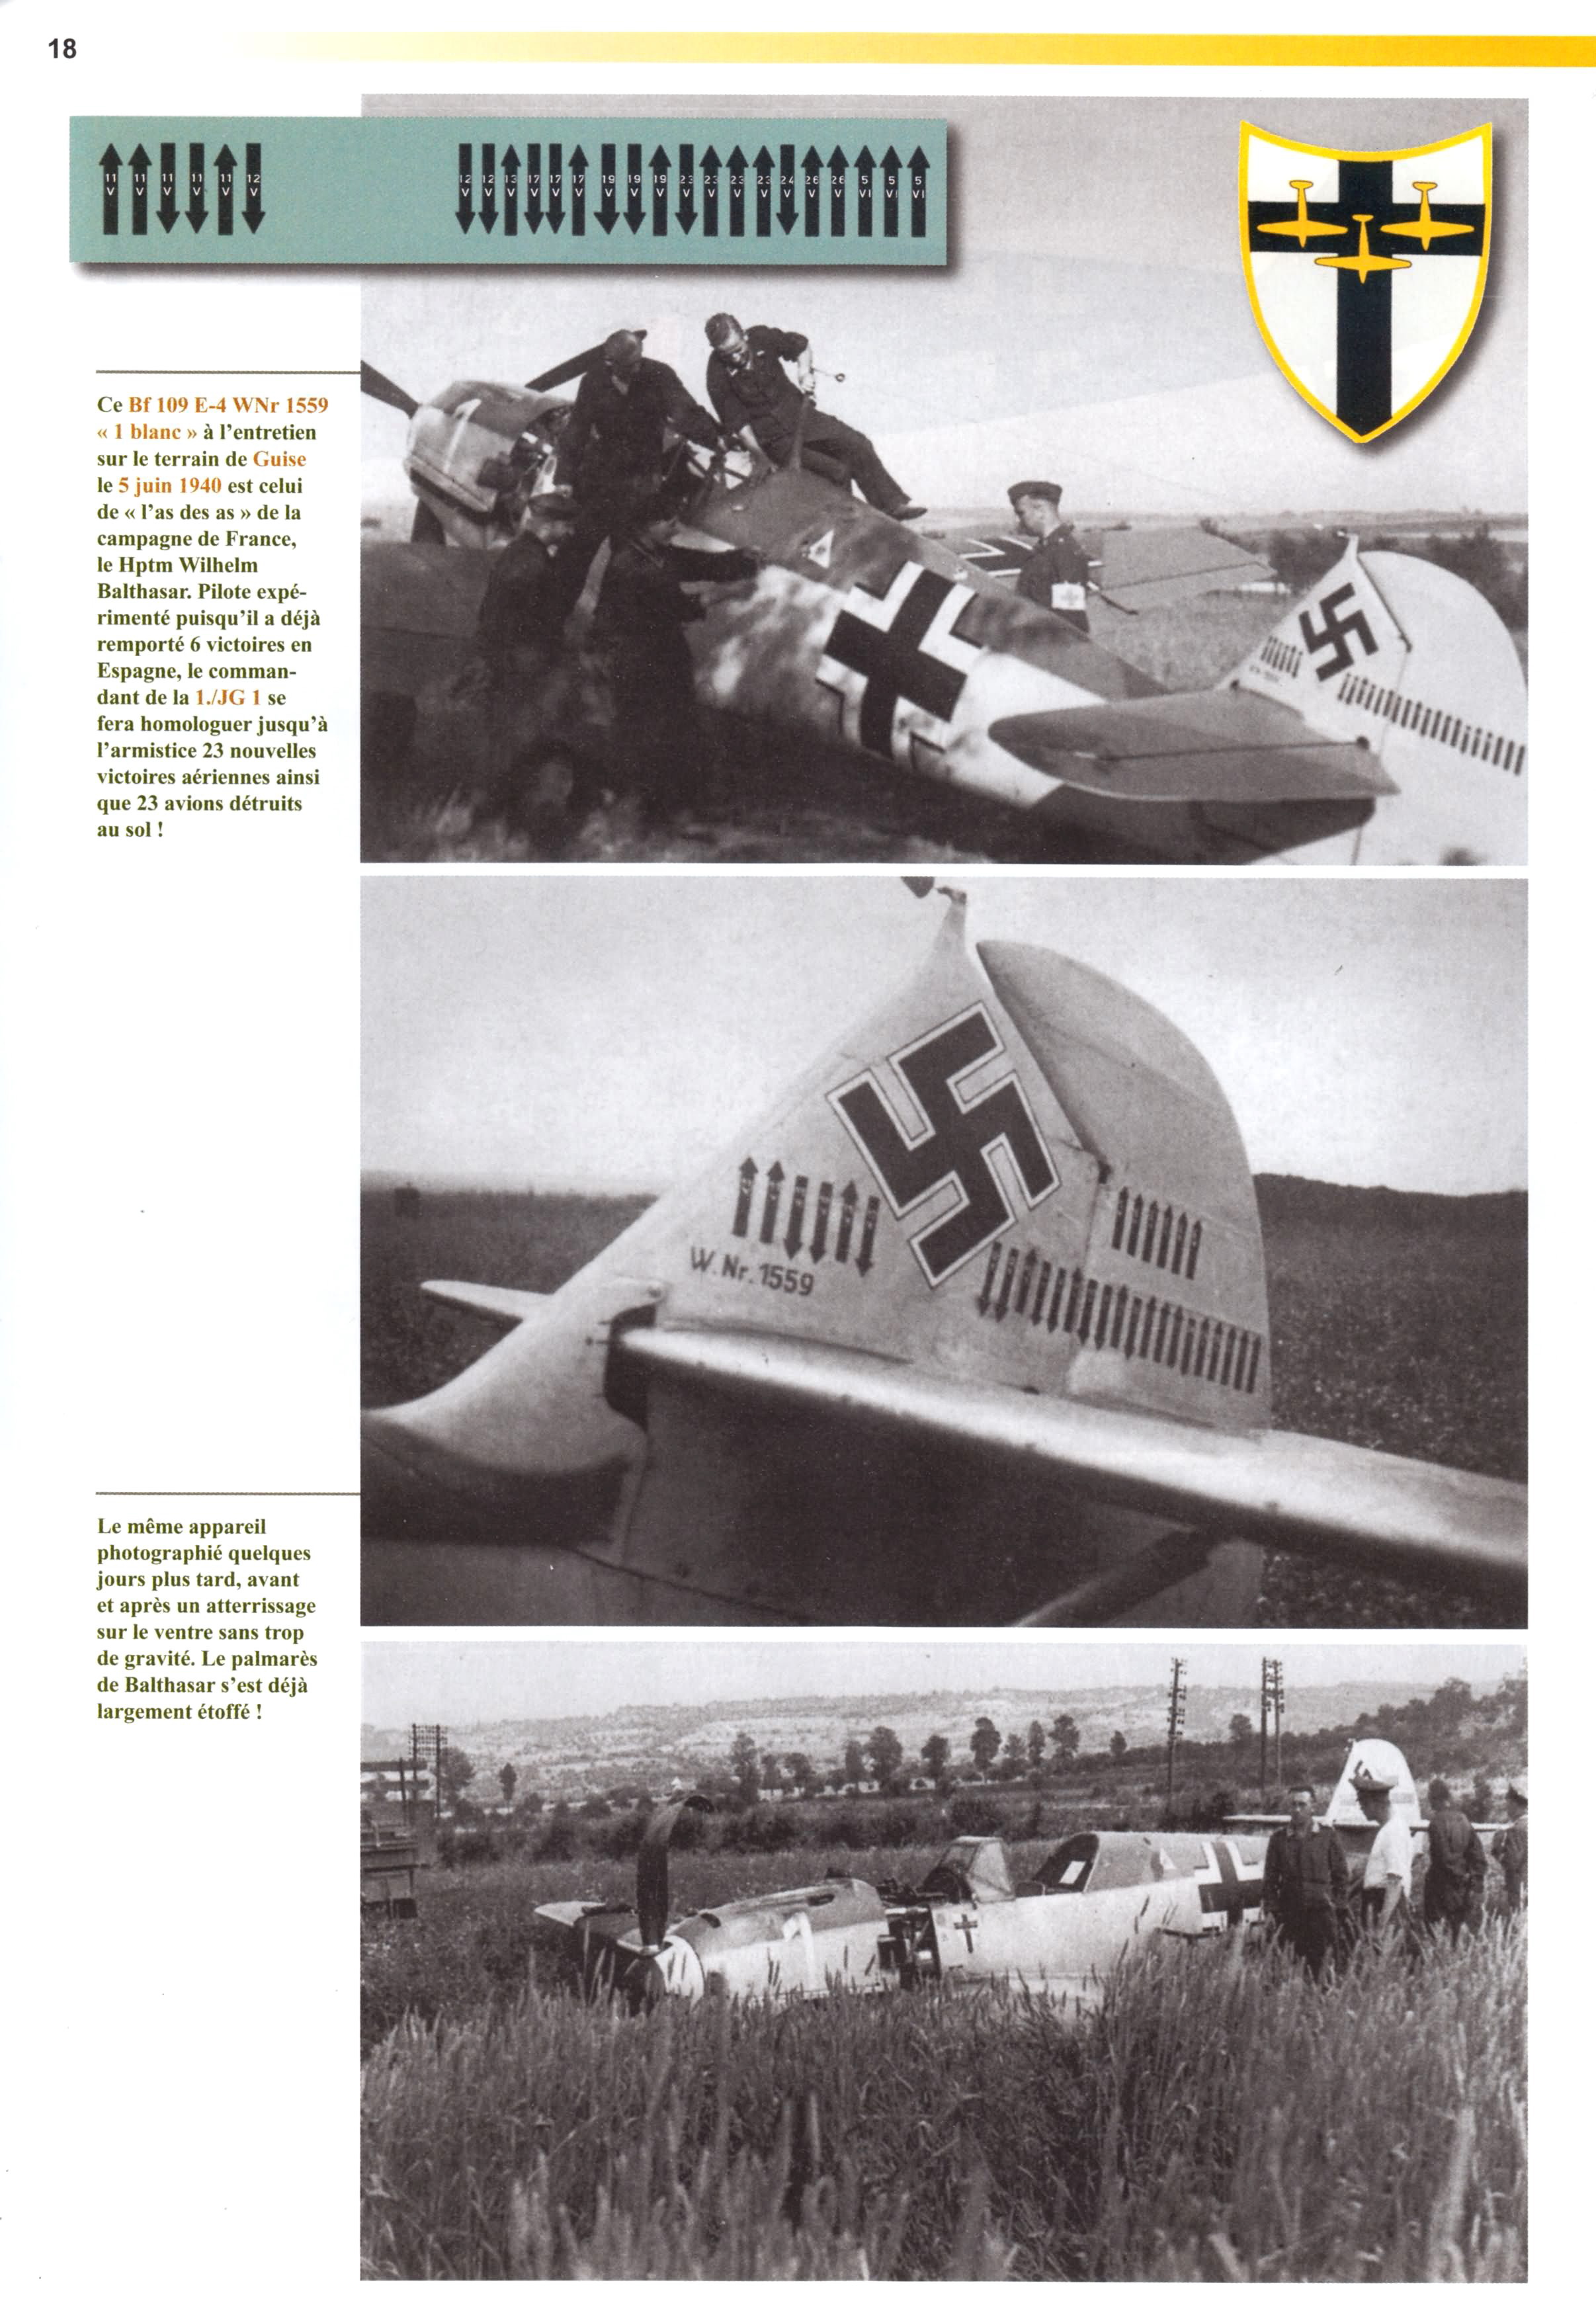 Messerschmitt Bf 109E4 1.JG1 White 1 Wilhelm Balthasar 1940 Avions 189